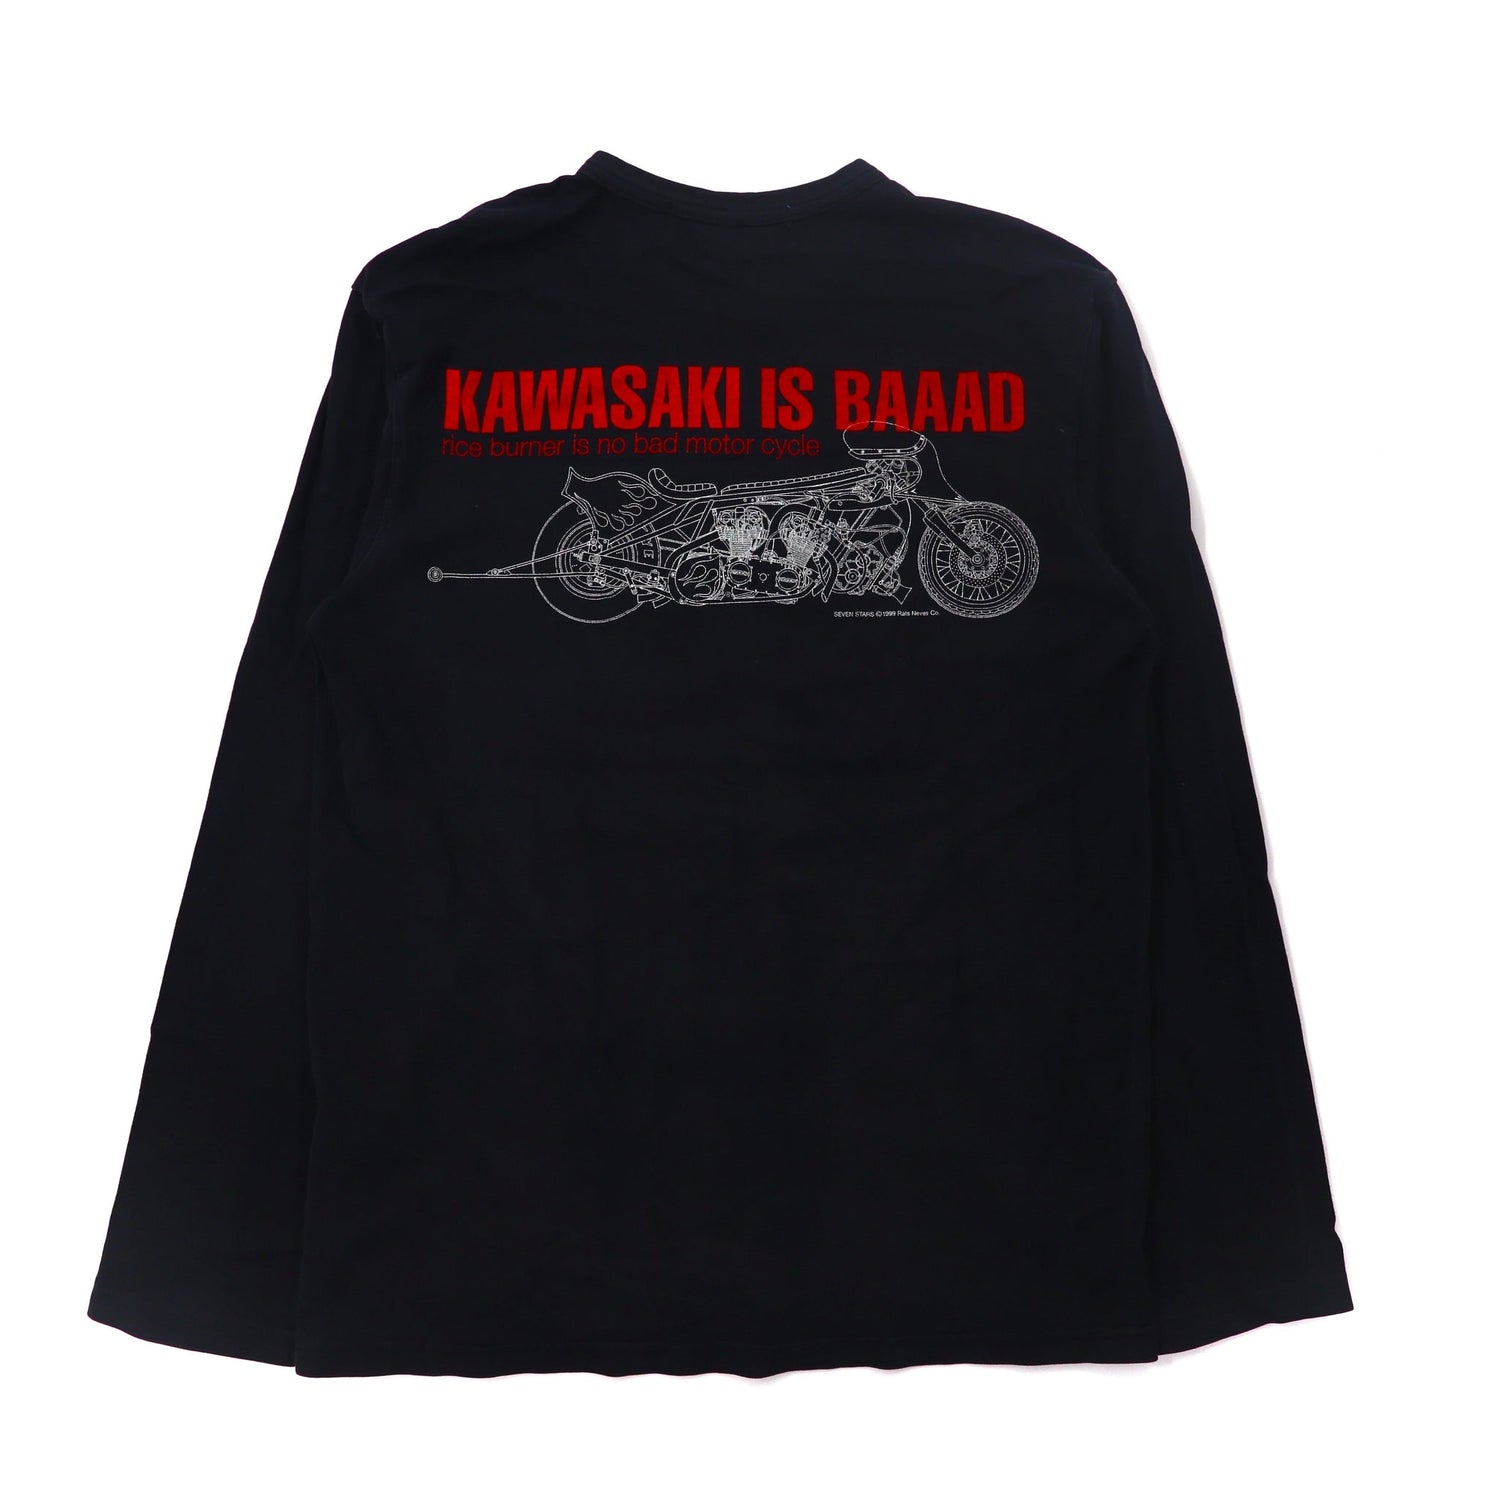 SOTQ Long Sleeve T-Shirt L Black Kawasaki Is Baaad Motorwn Limited 